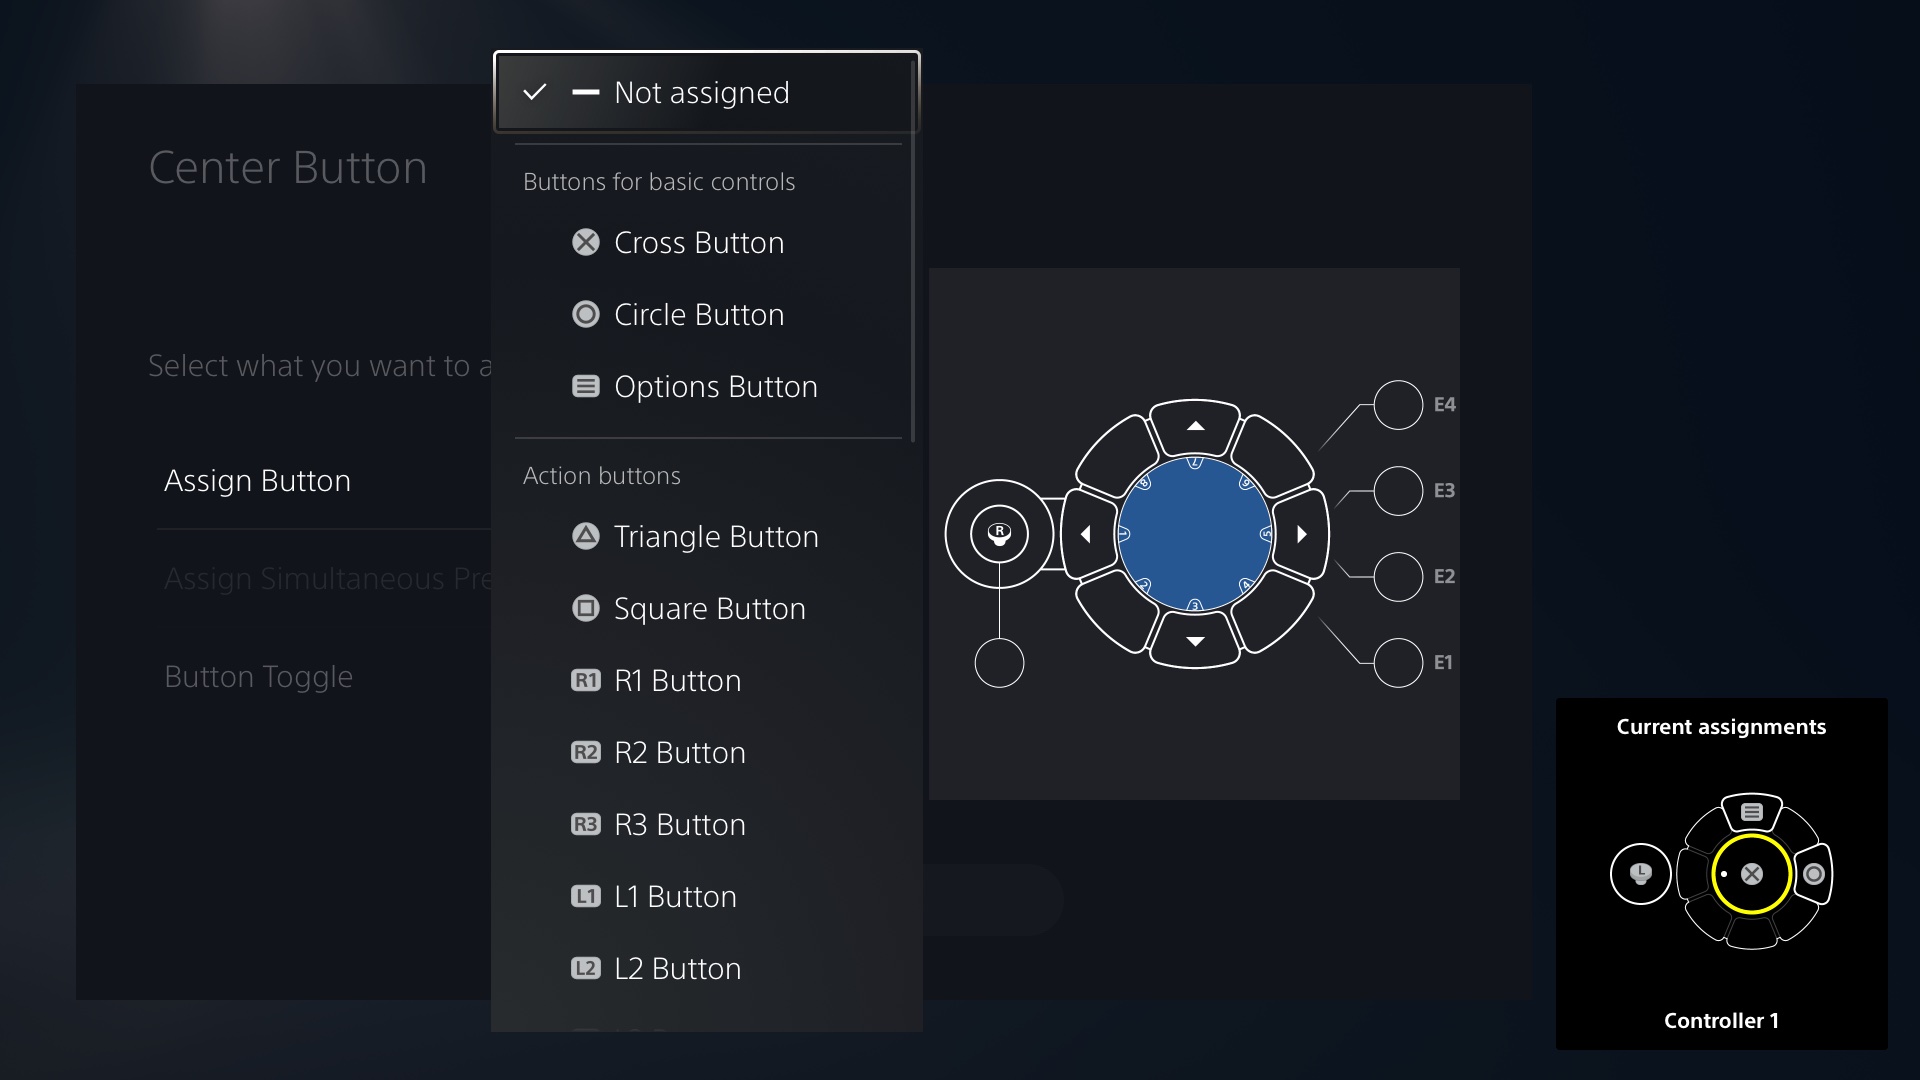  "Image de l'interface utilisateur du contrôleur d'accès montrant les choix d'affectation des boutons"